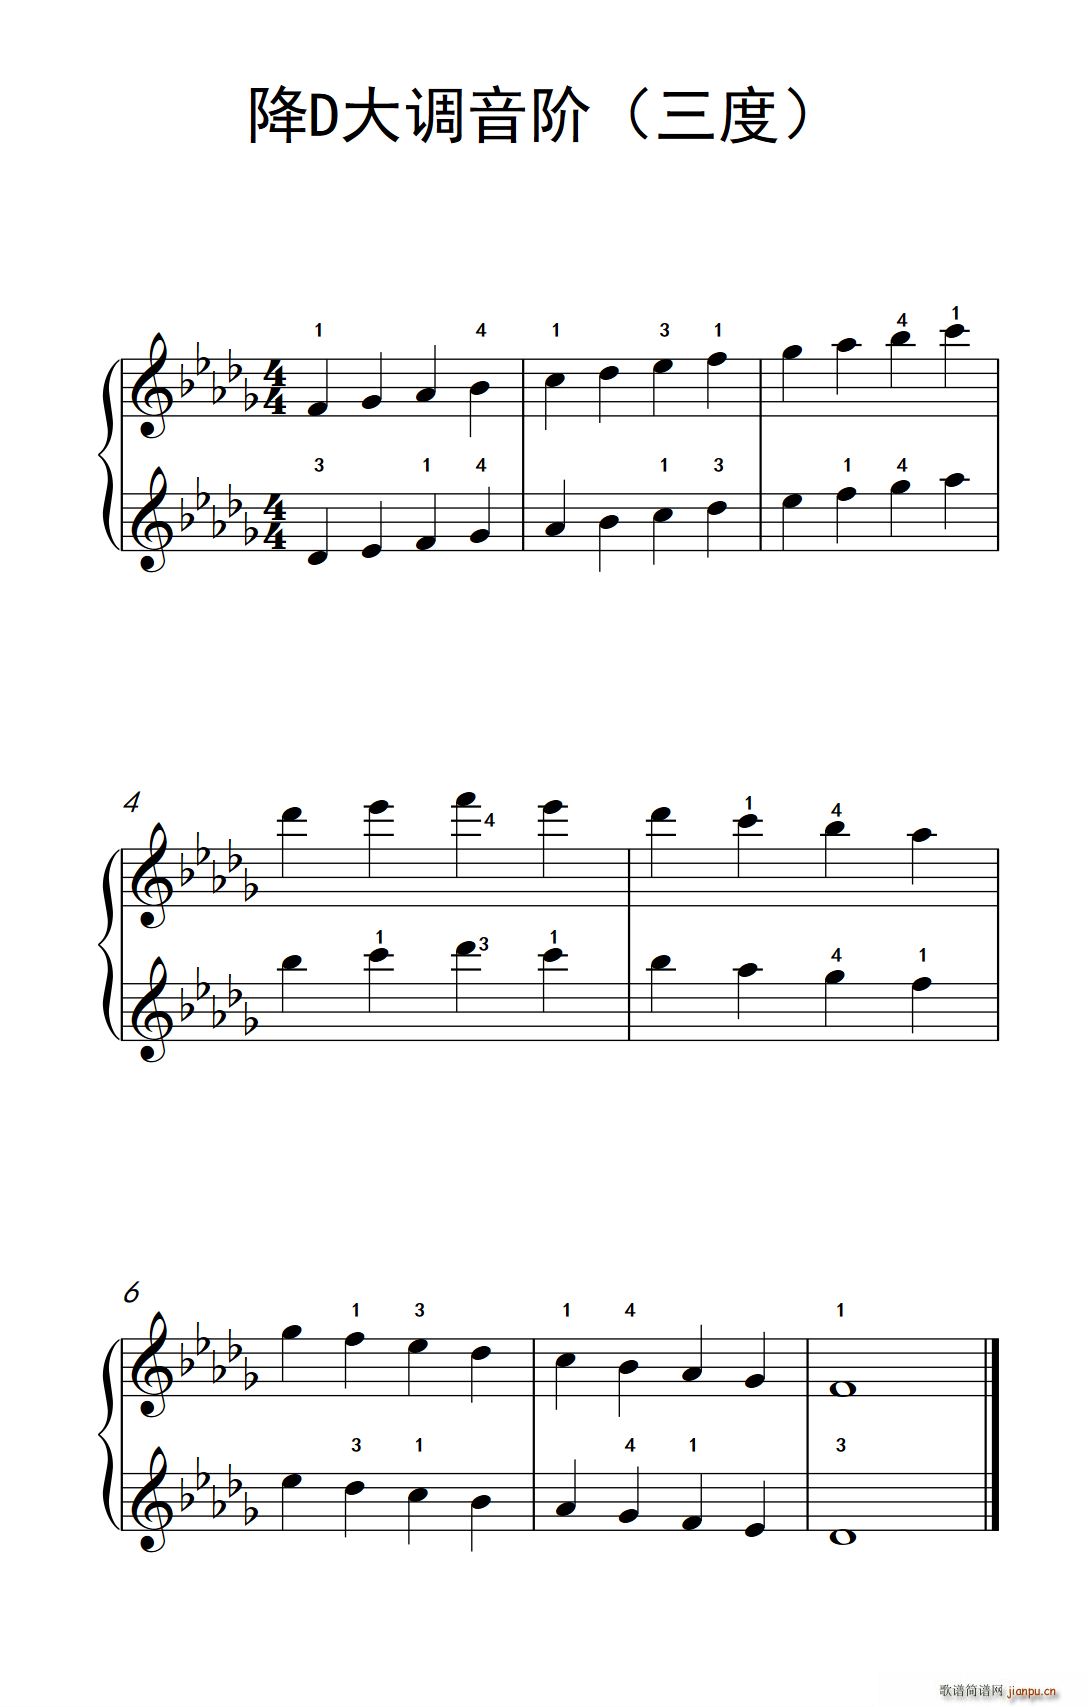 降d大调音阶(三度)(孩子们的钢琴音阶,和弦与琶音 2)图片